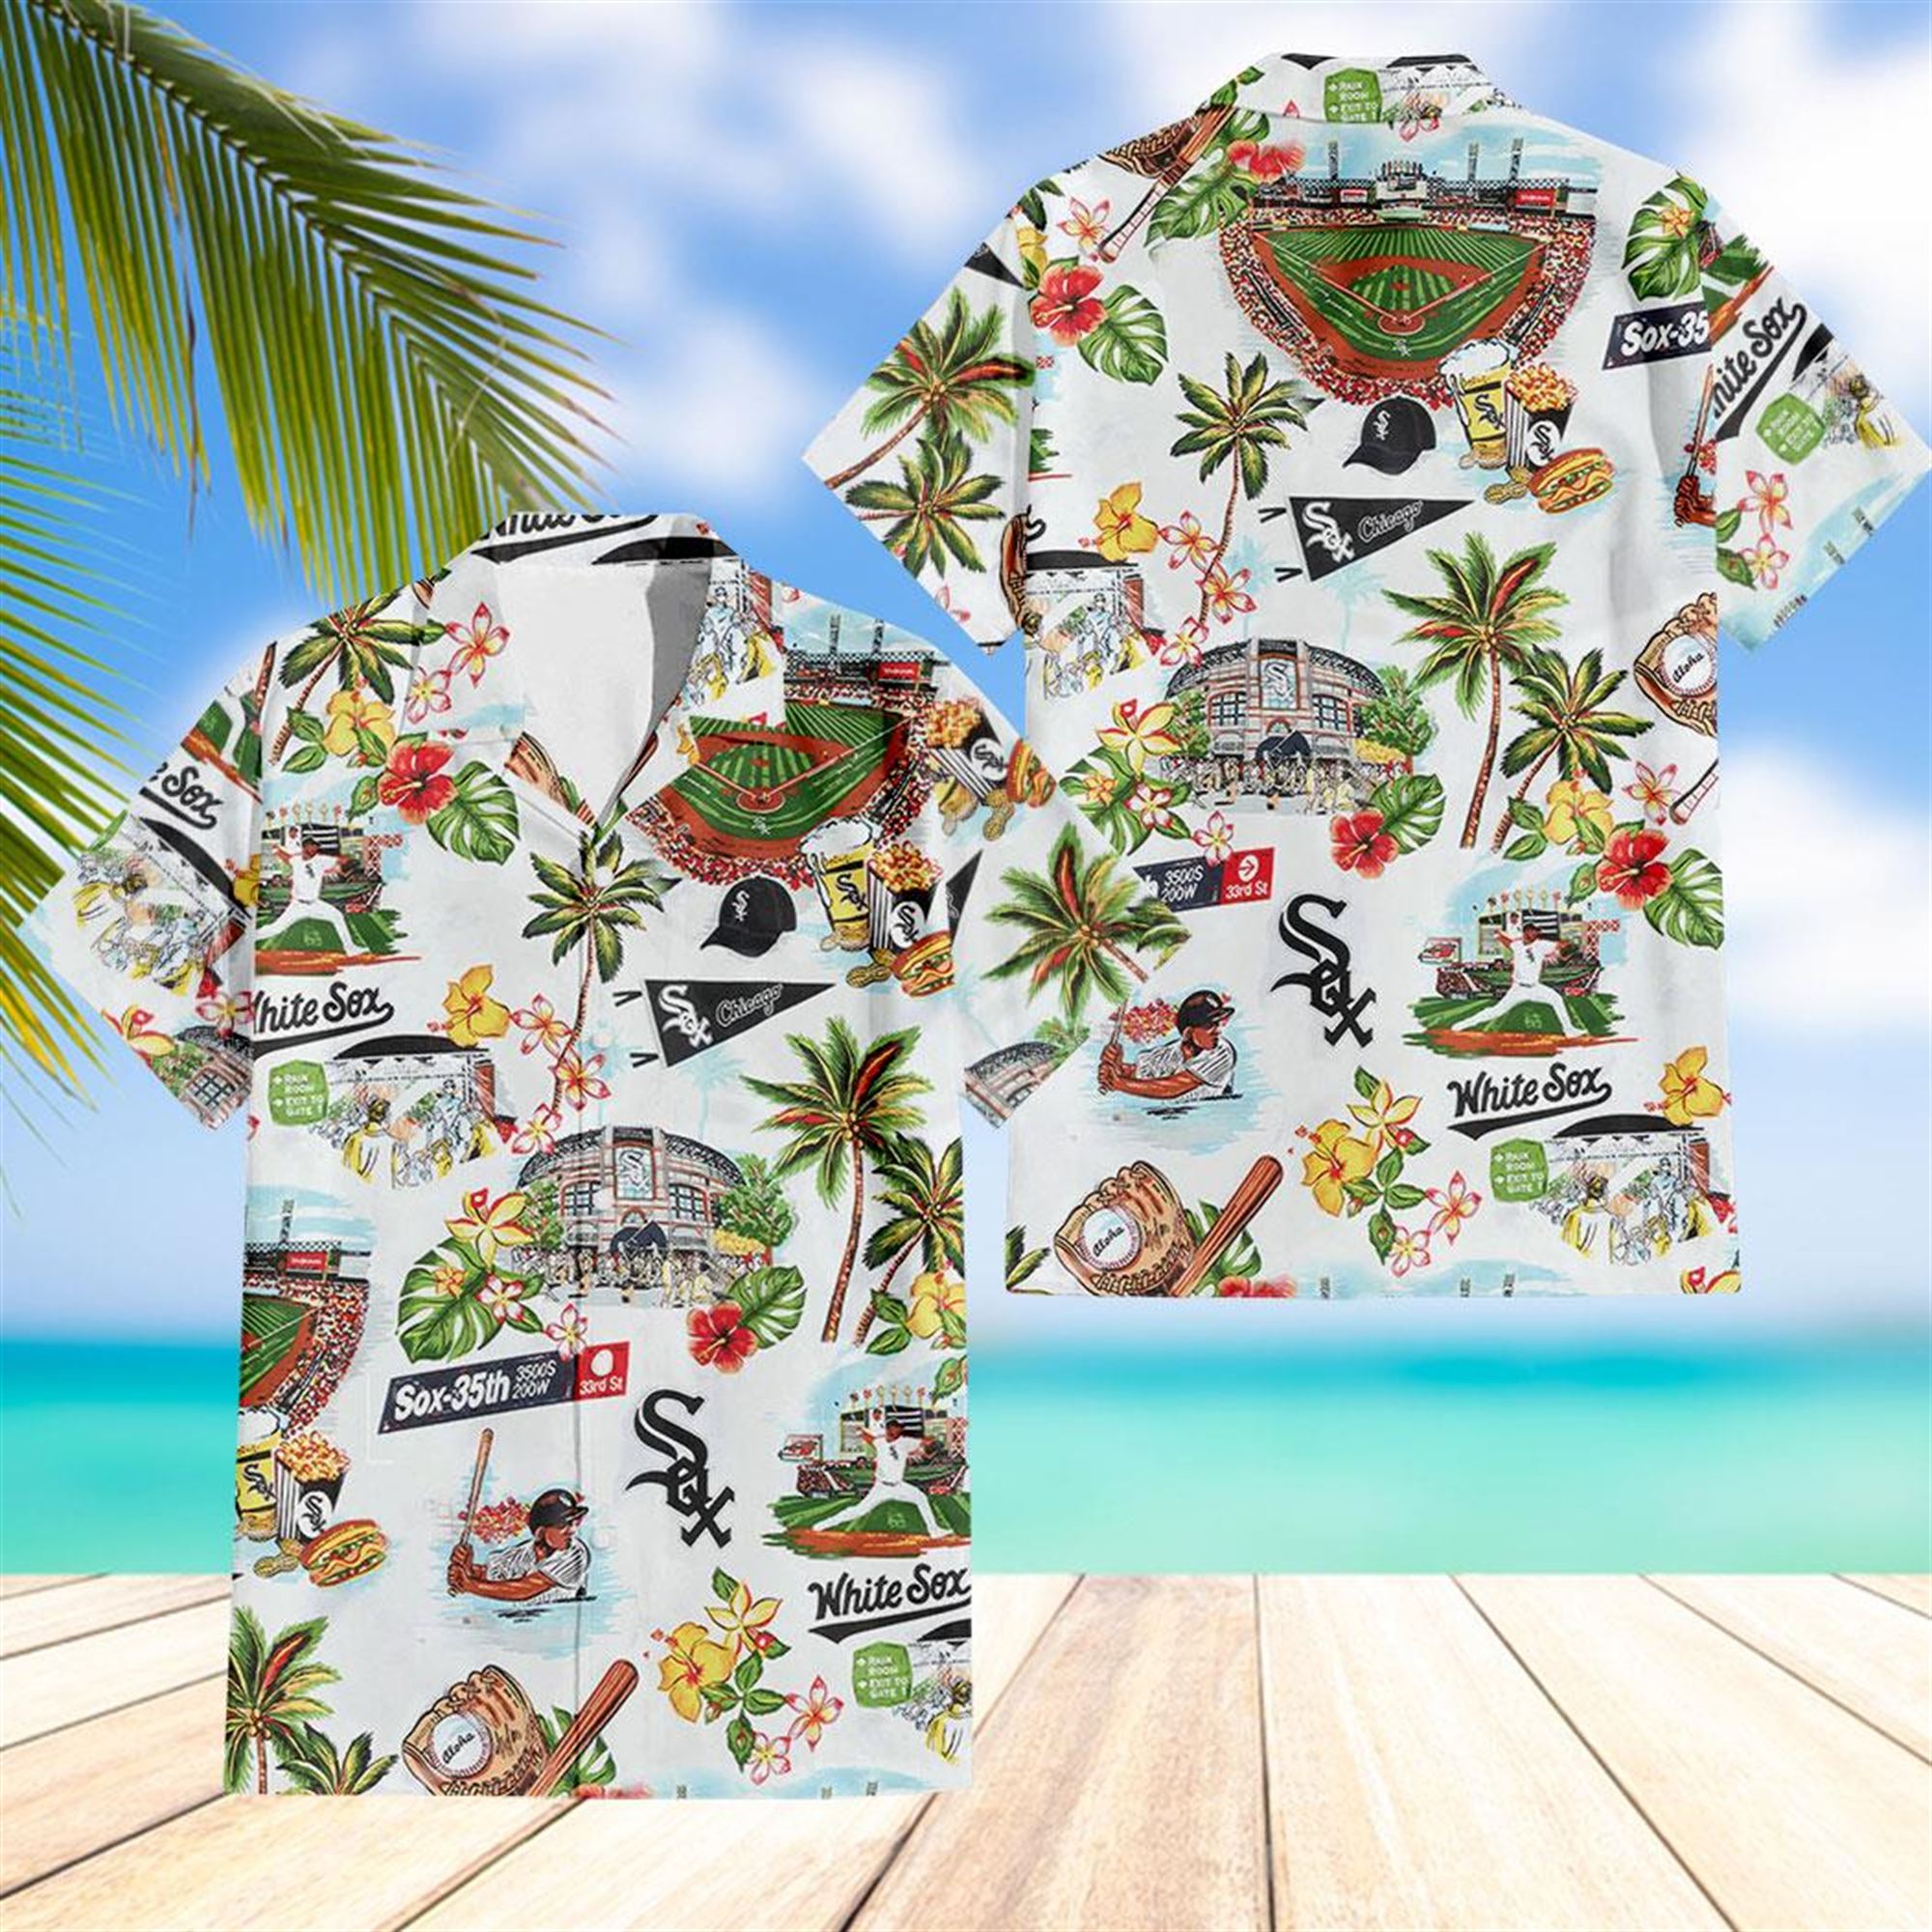 White Sox Hawaiian Shirt